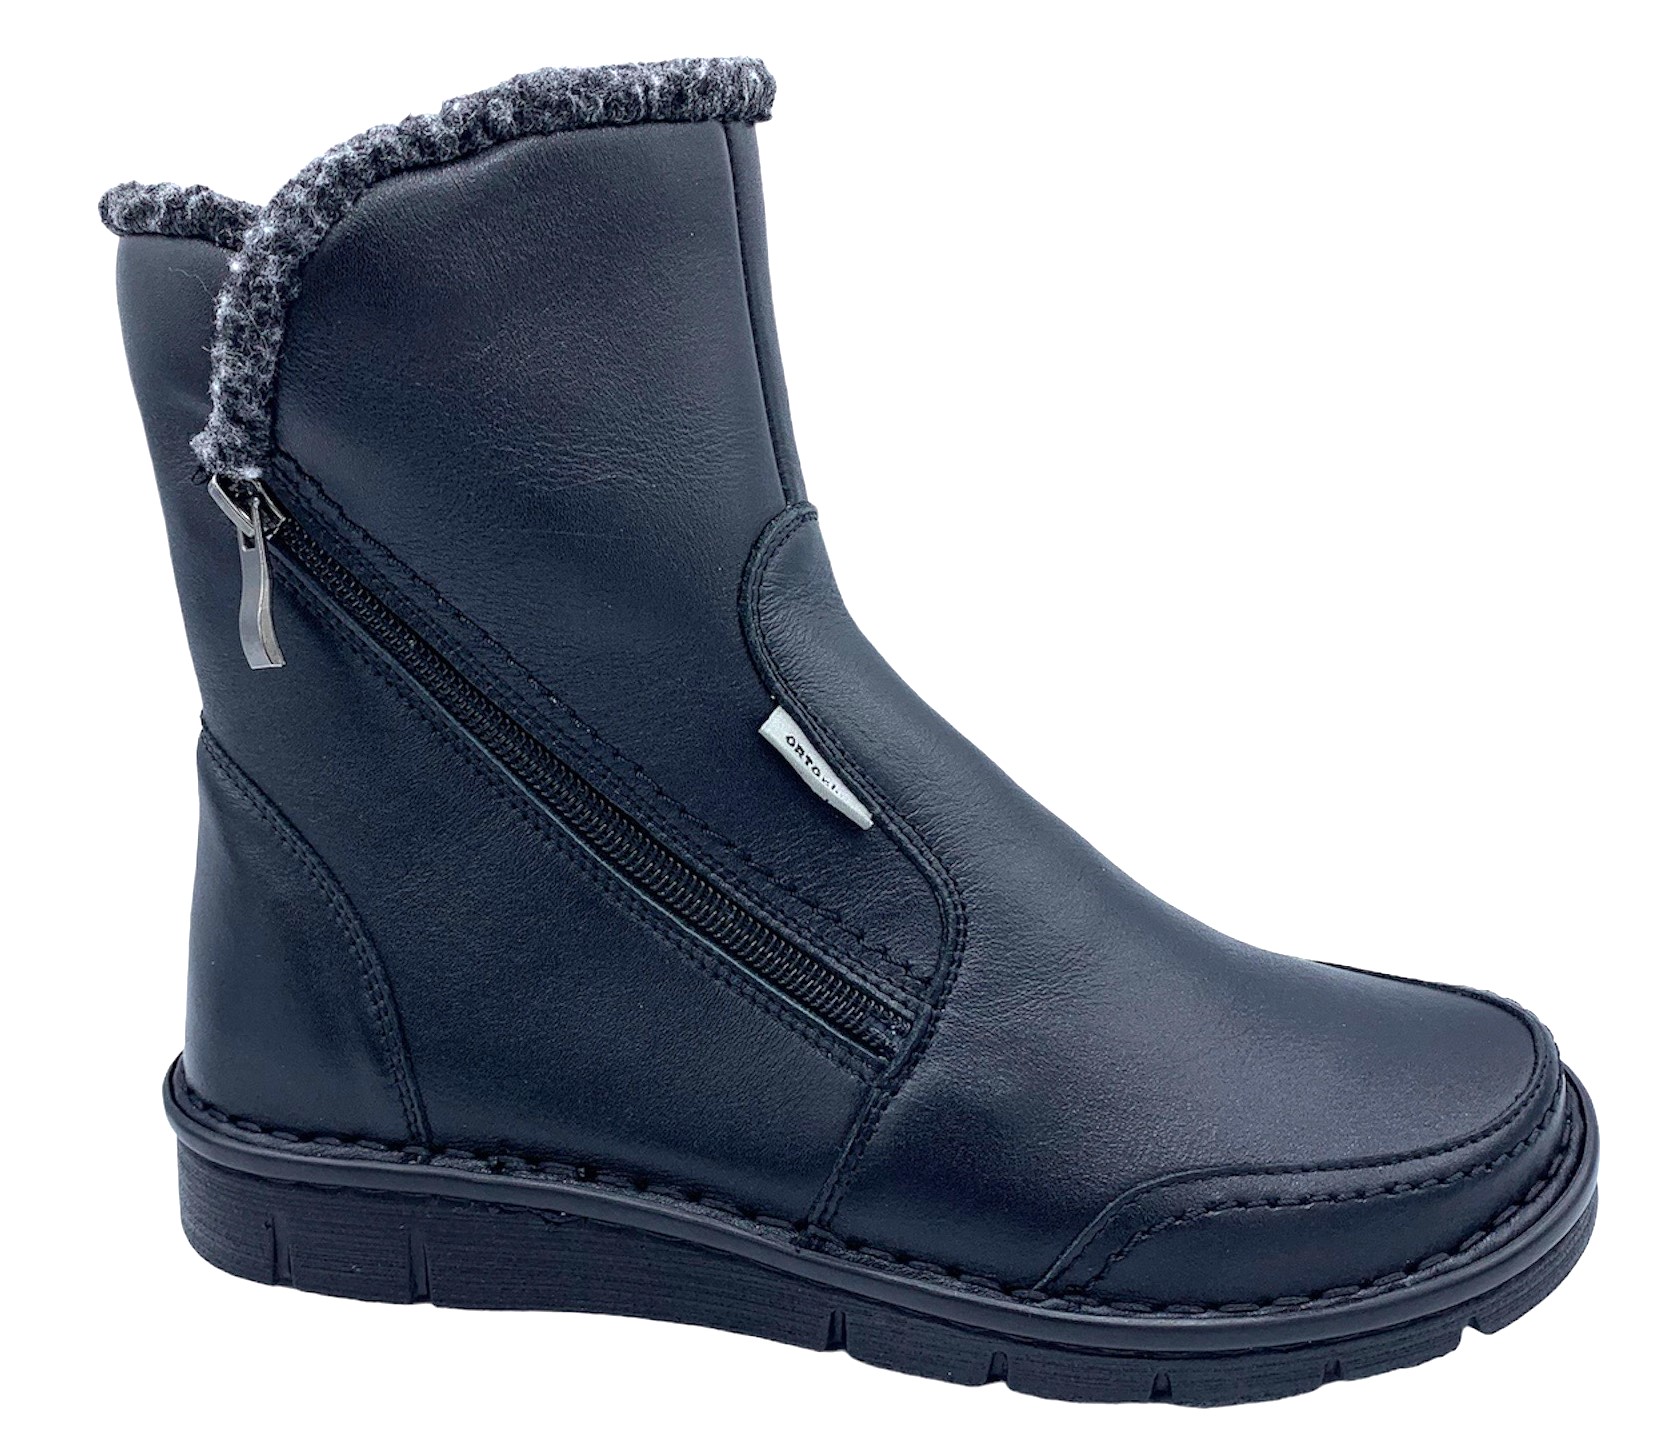 Dámská zimní zdravotní obuv Orto Plus 90115 černé Velikost: 41 (EU)